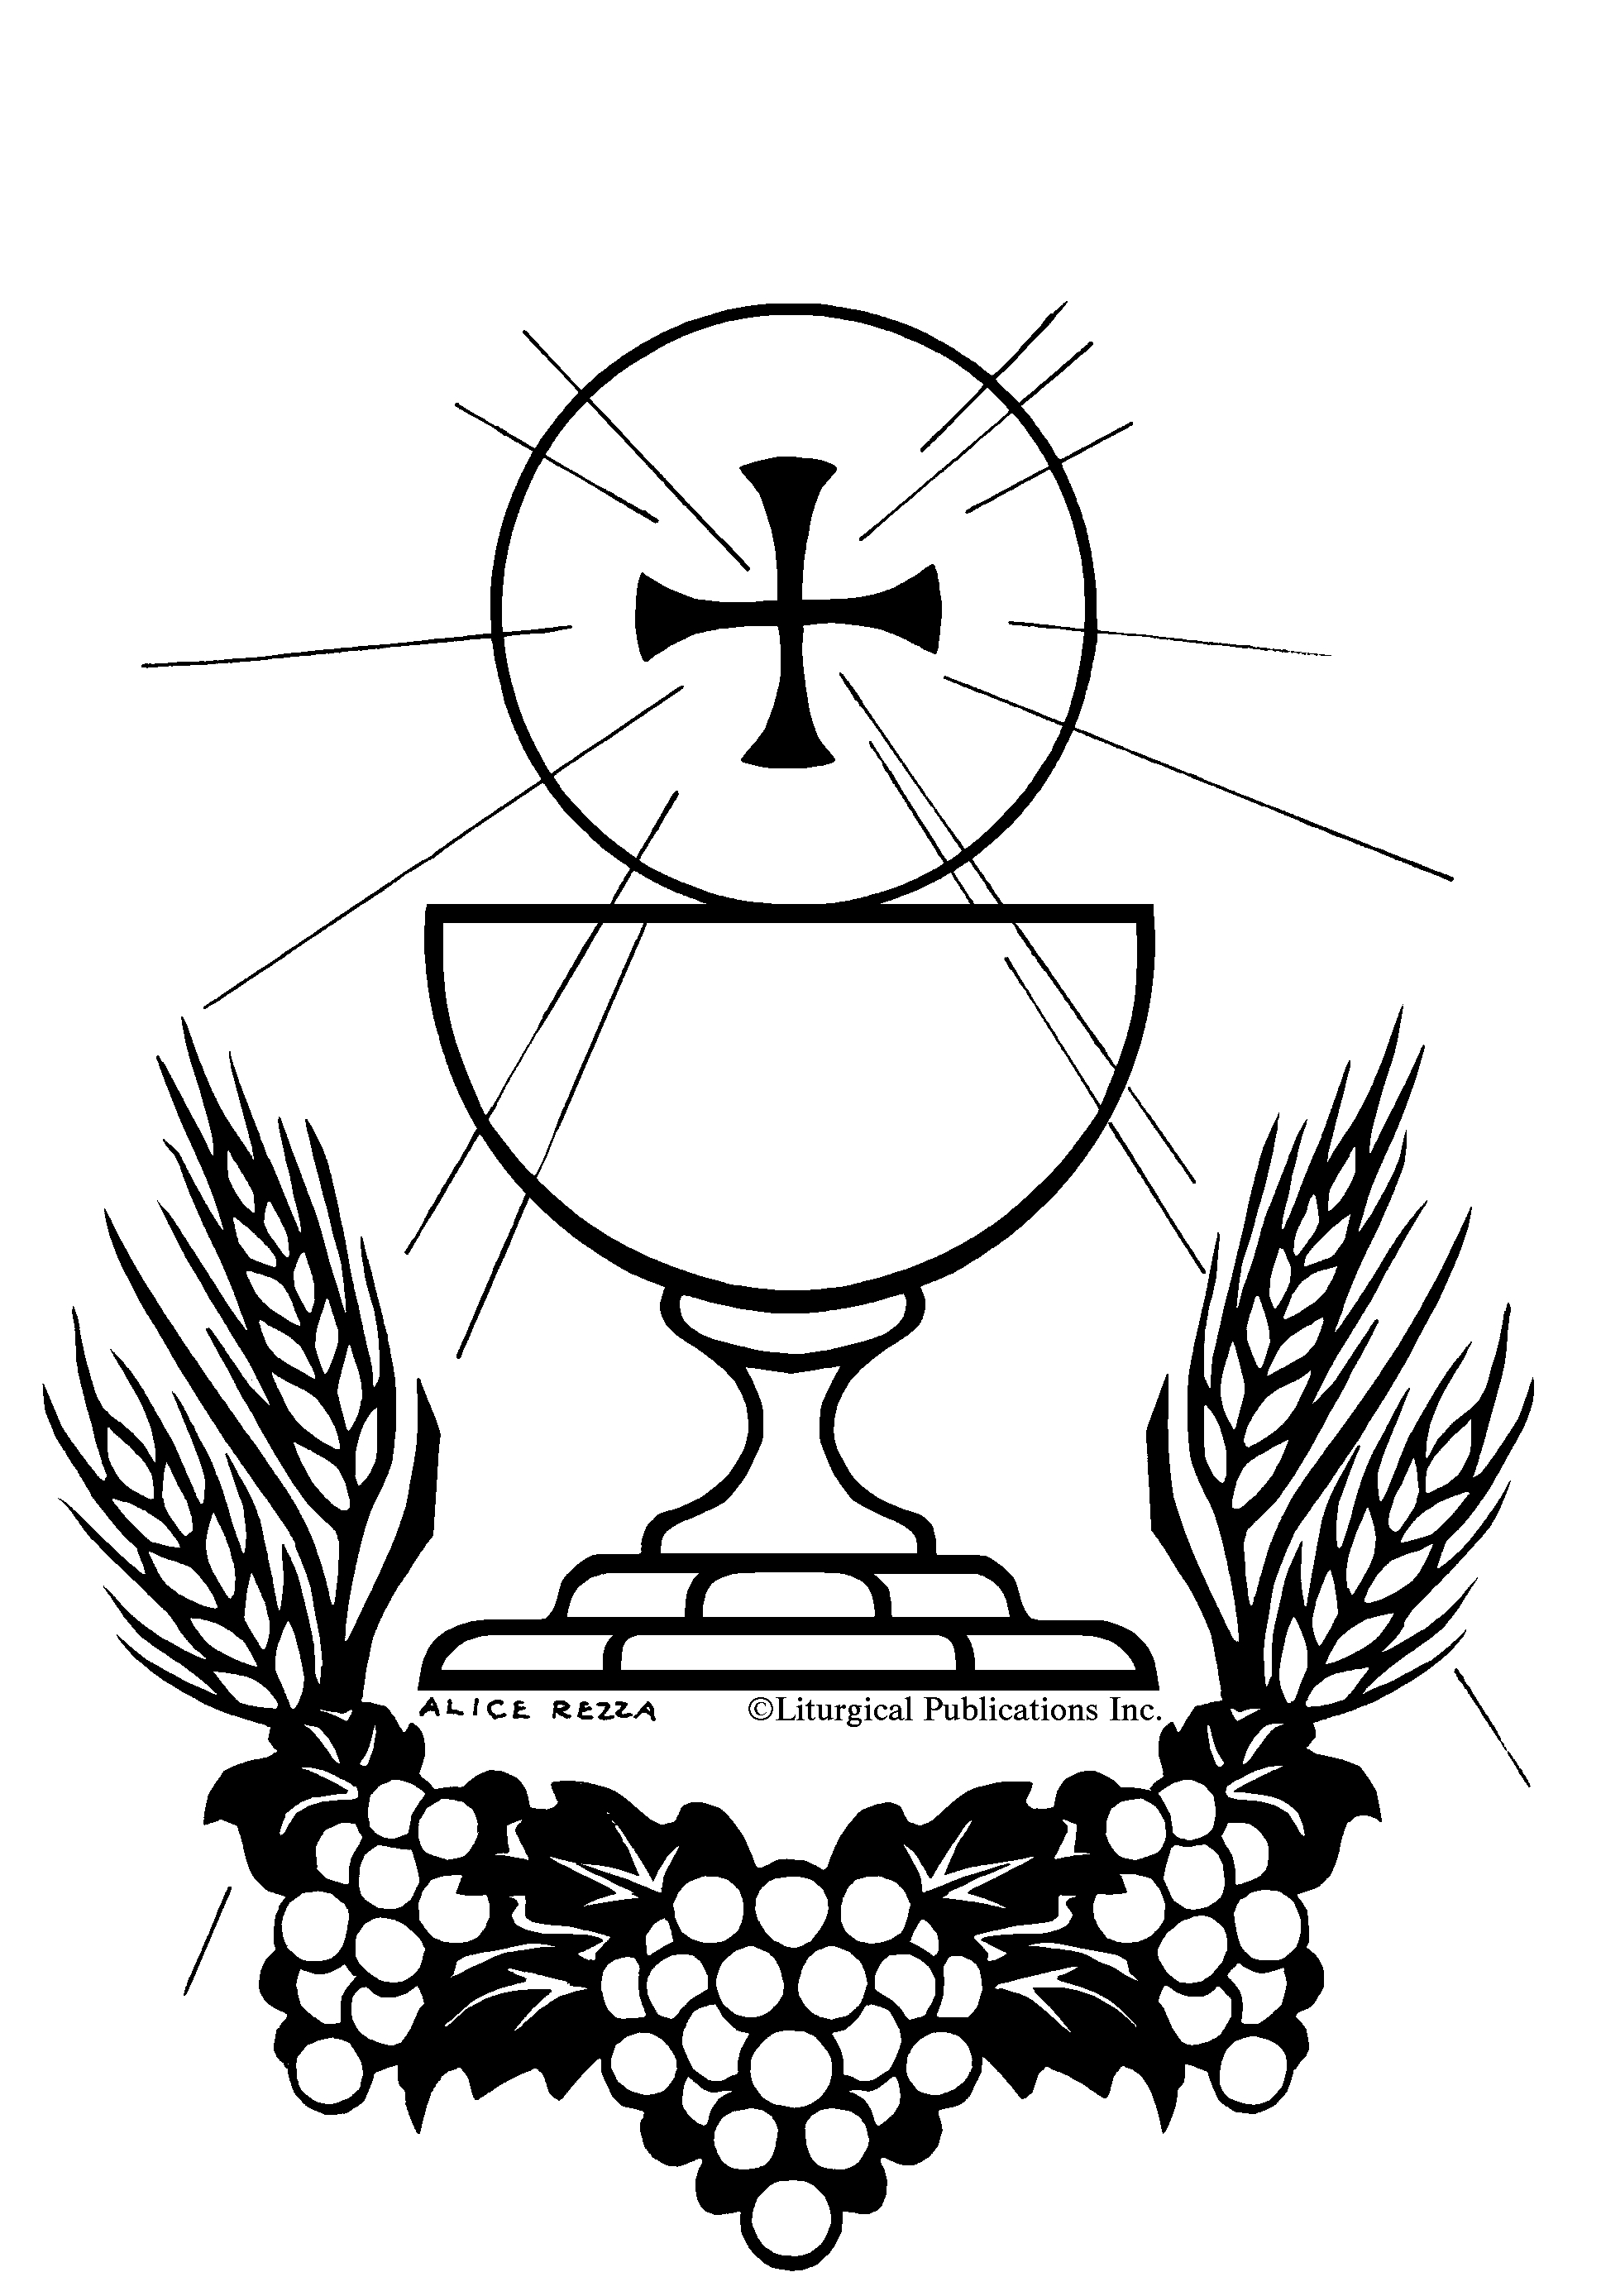 Día del Corpus Christi | Parroquias de Serantes, Maianca, Dexo y Veigue